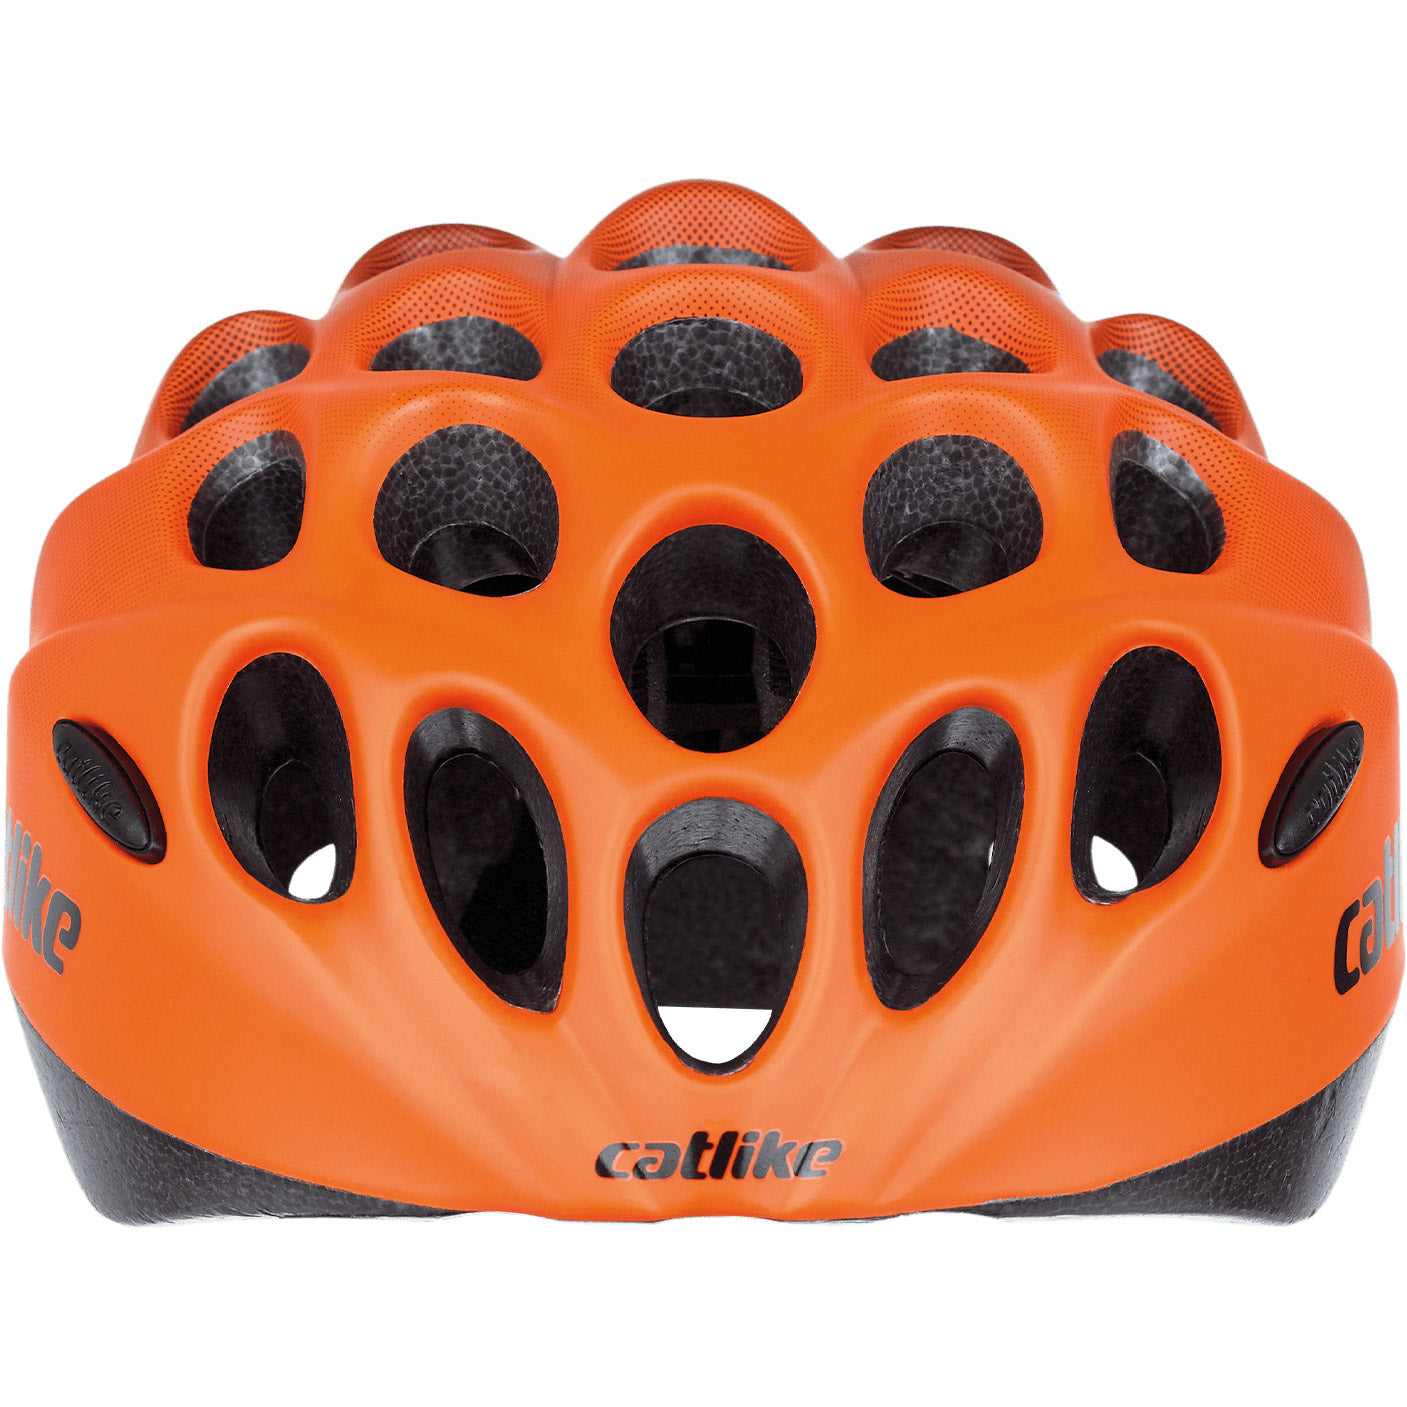 Catm Helm Kitten Dimensione XS 49-52 cm arancione